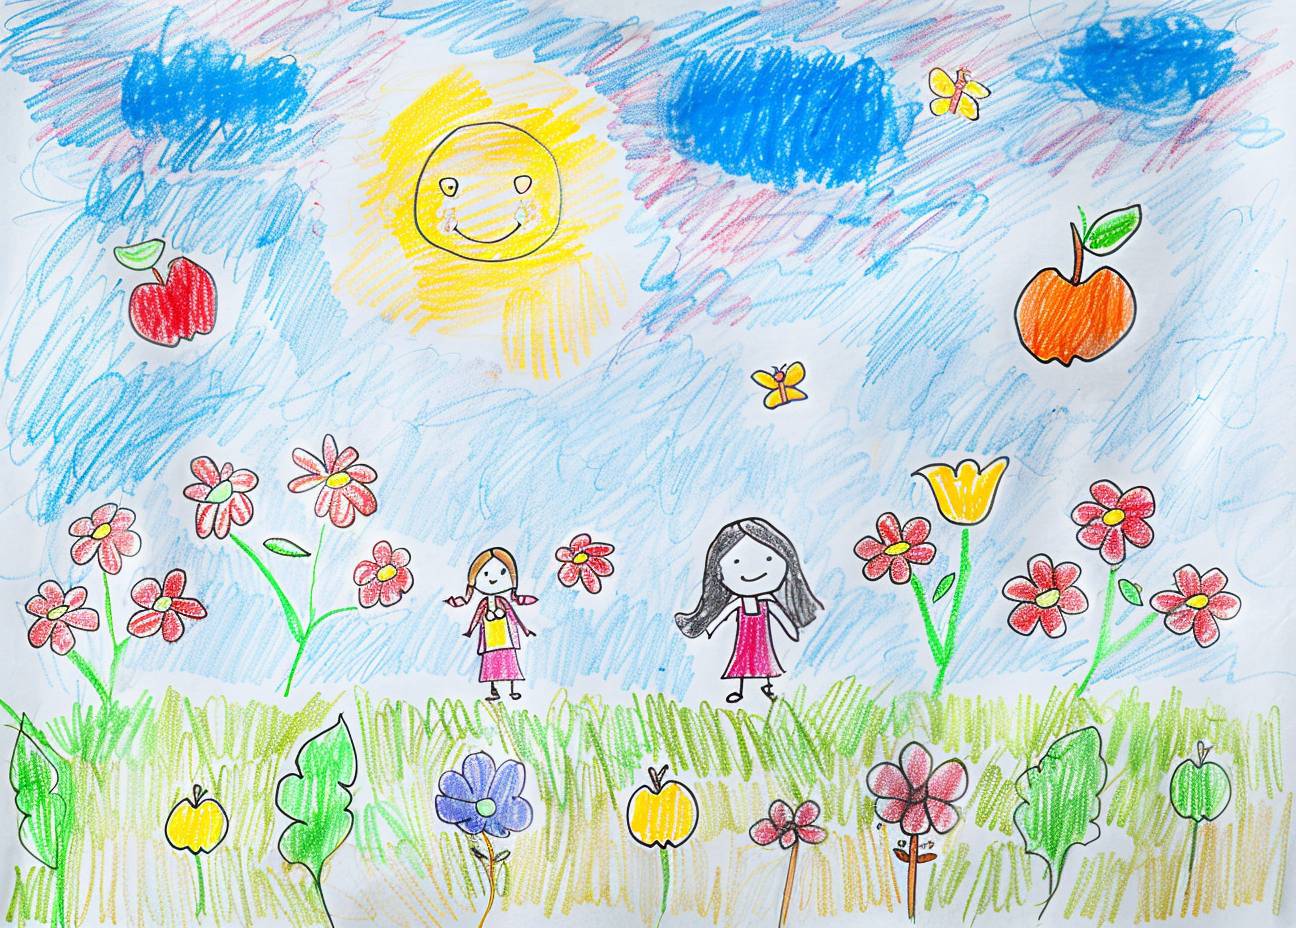 太った子供が手作りで色鉛筆で白い紙に描いた単純な原始アートのスタイルの中に魔法の空と多くの花や蝶があり、子供の本向けの魔法のイメージです。背景は空の色、簡単な線で影がないカートゥーンの可愛らしさがあり、彼らの後ろにはリンゴの木があります。